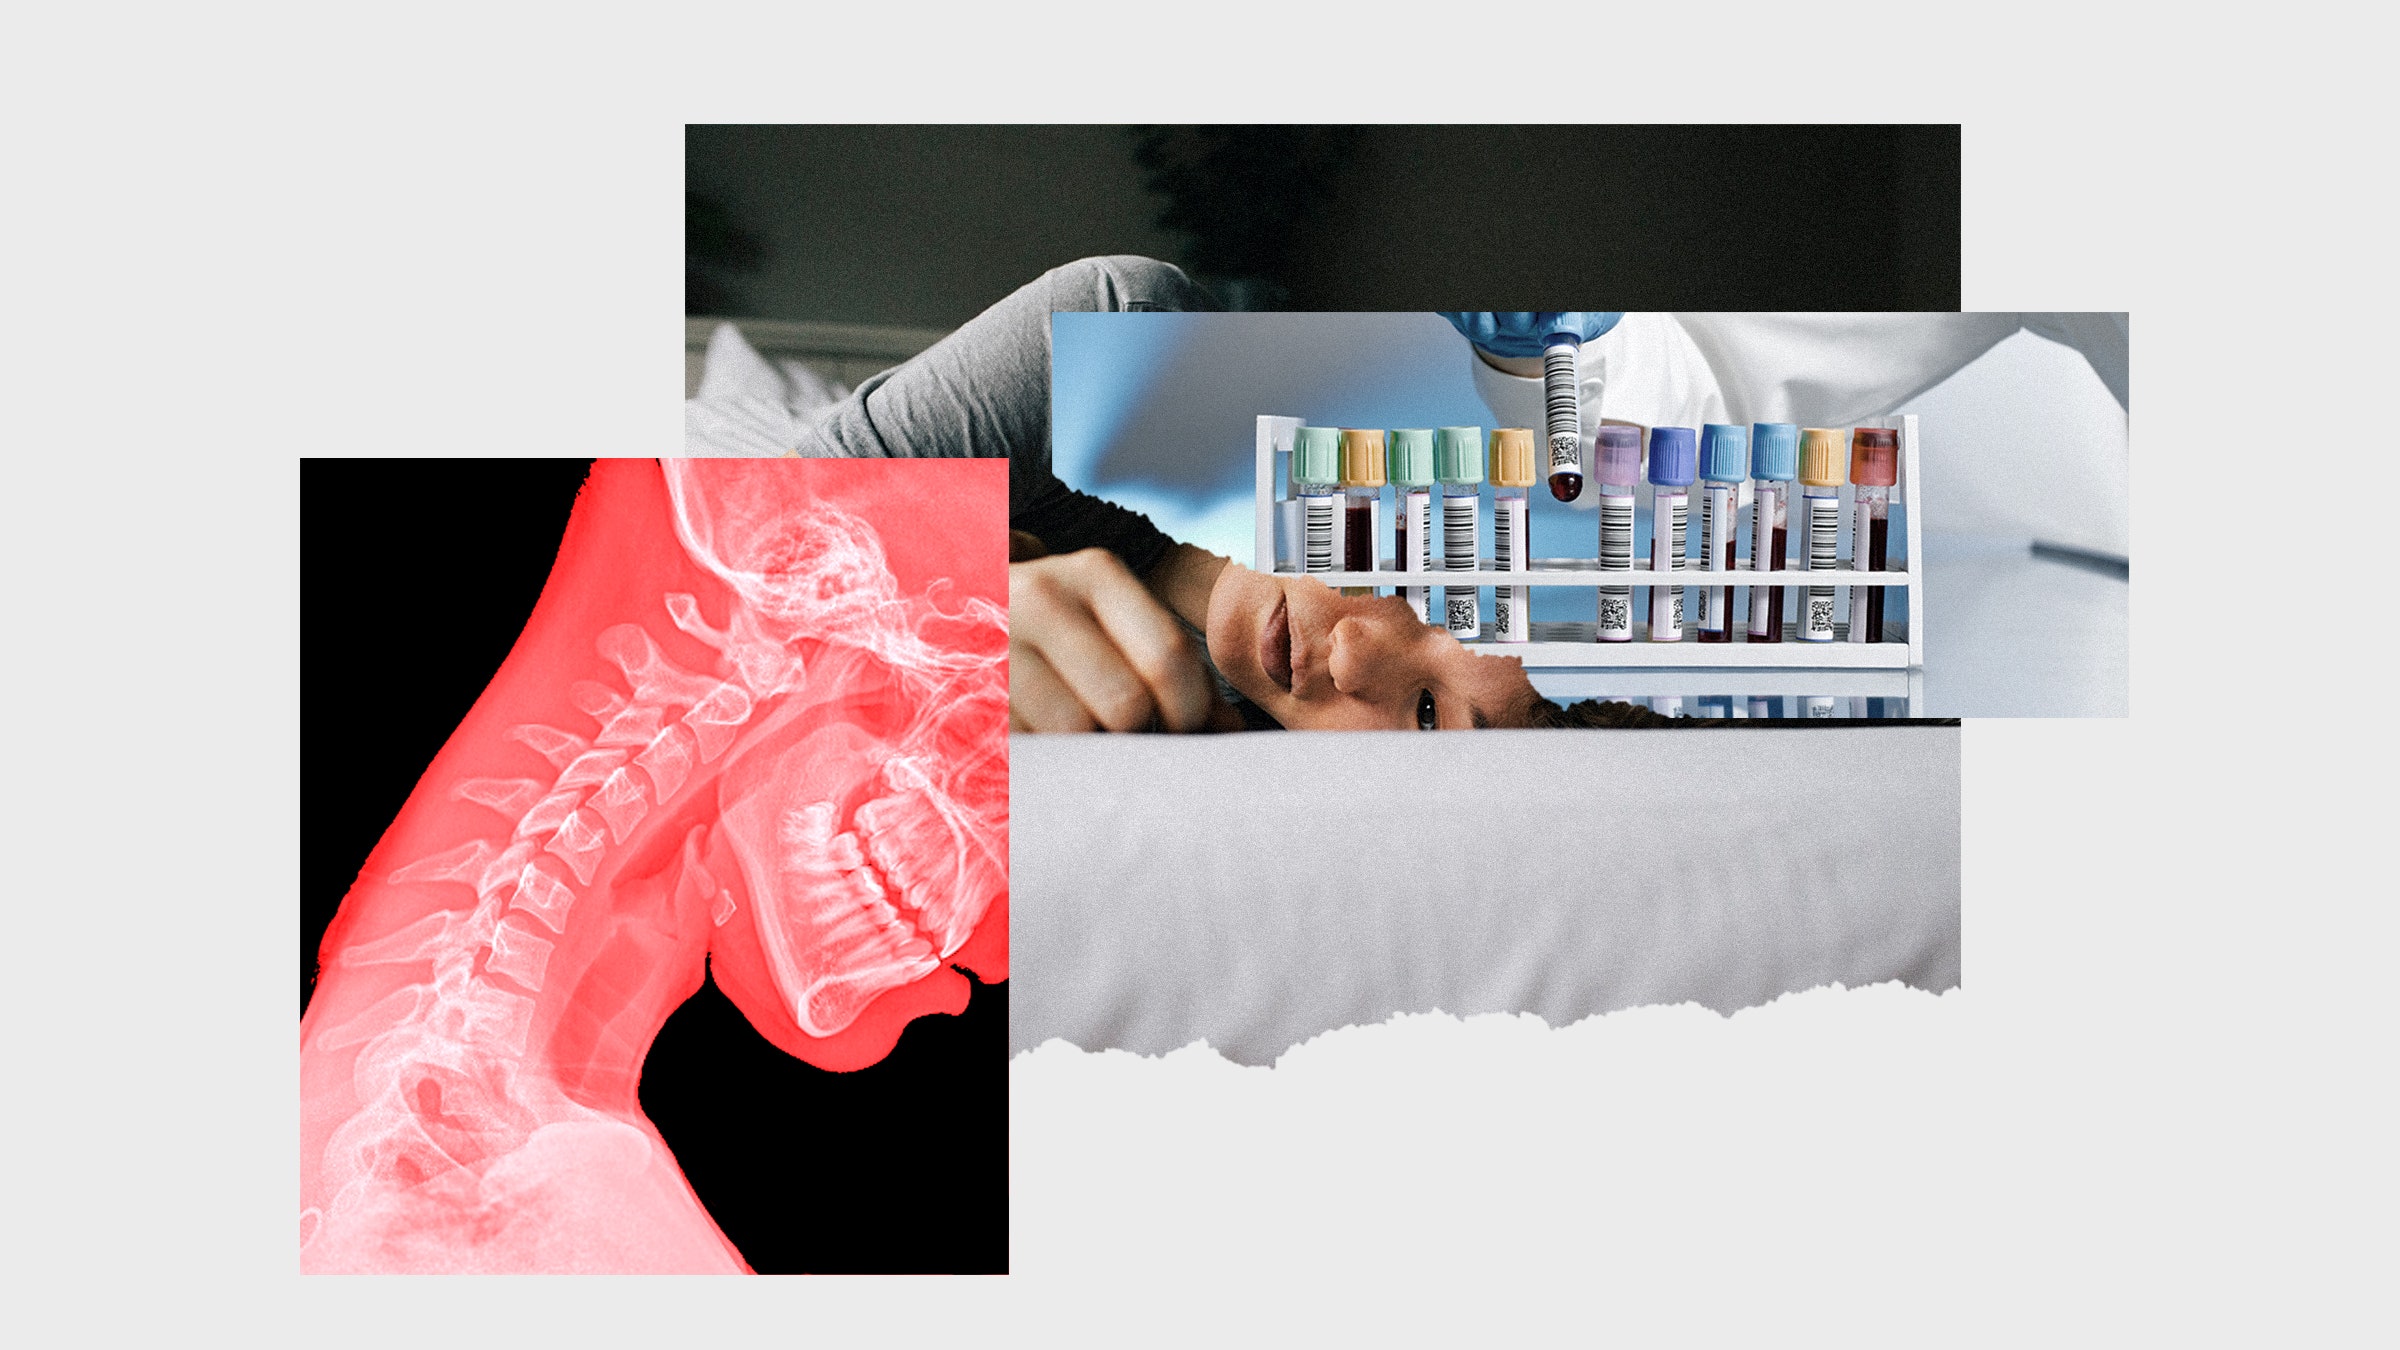 Colagem de imagens de uma radiografia da coluna vertebral de uma pessoa deitada na cama e exames de sangue